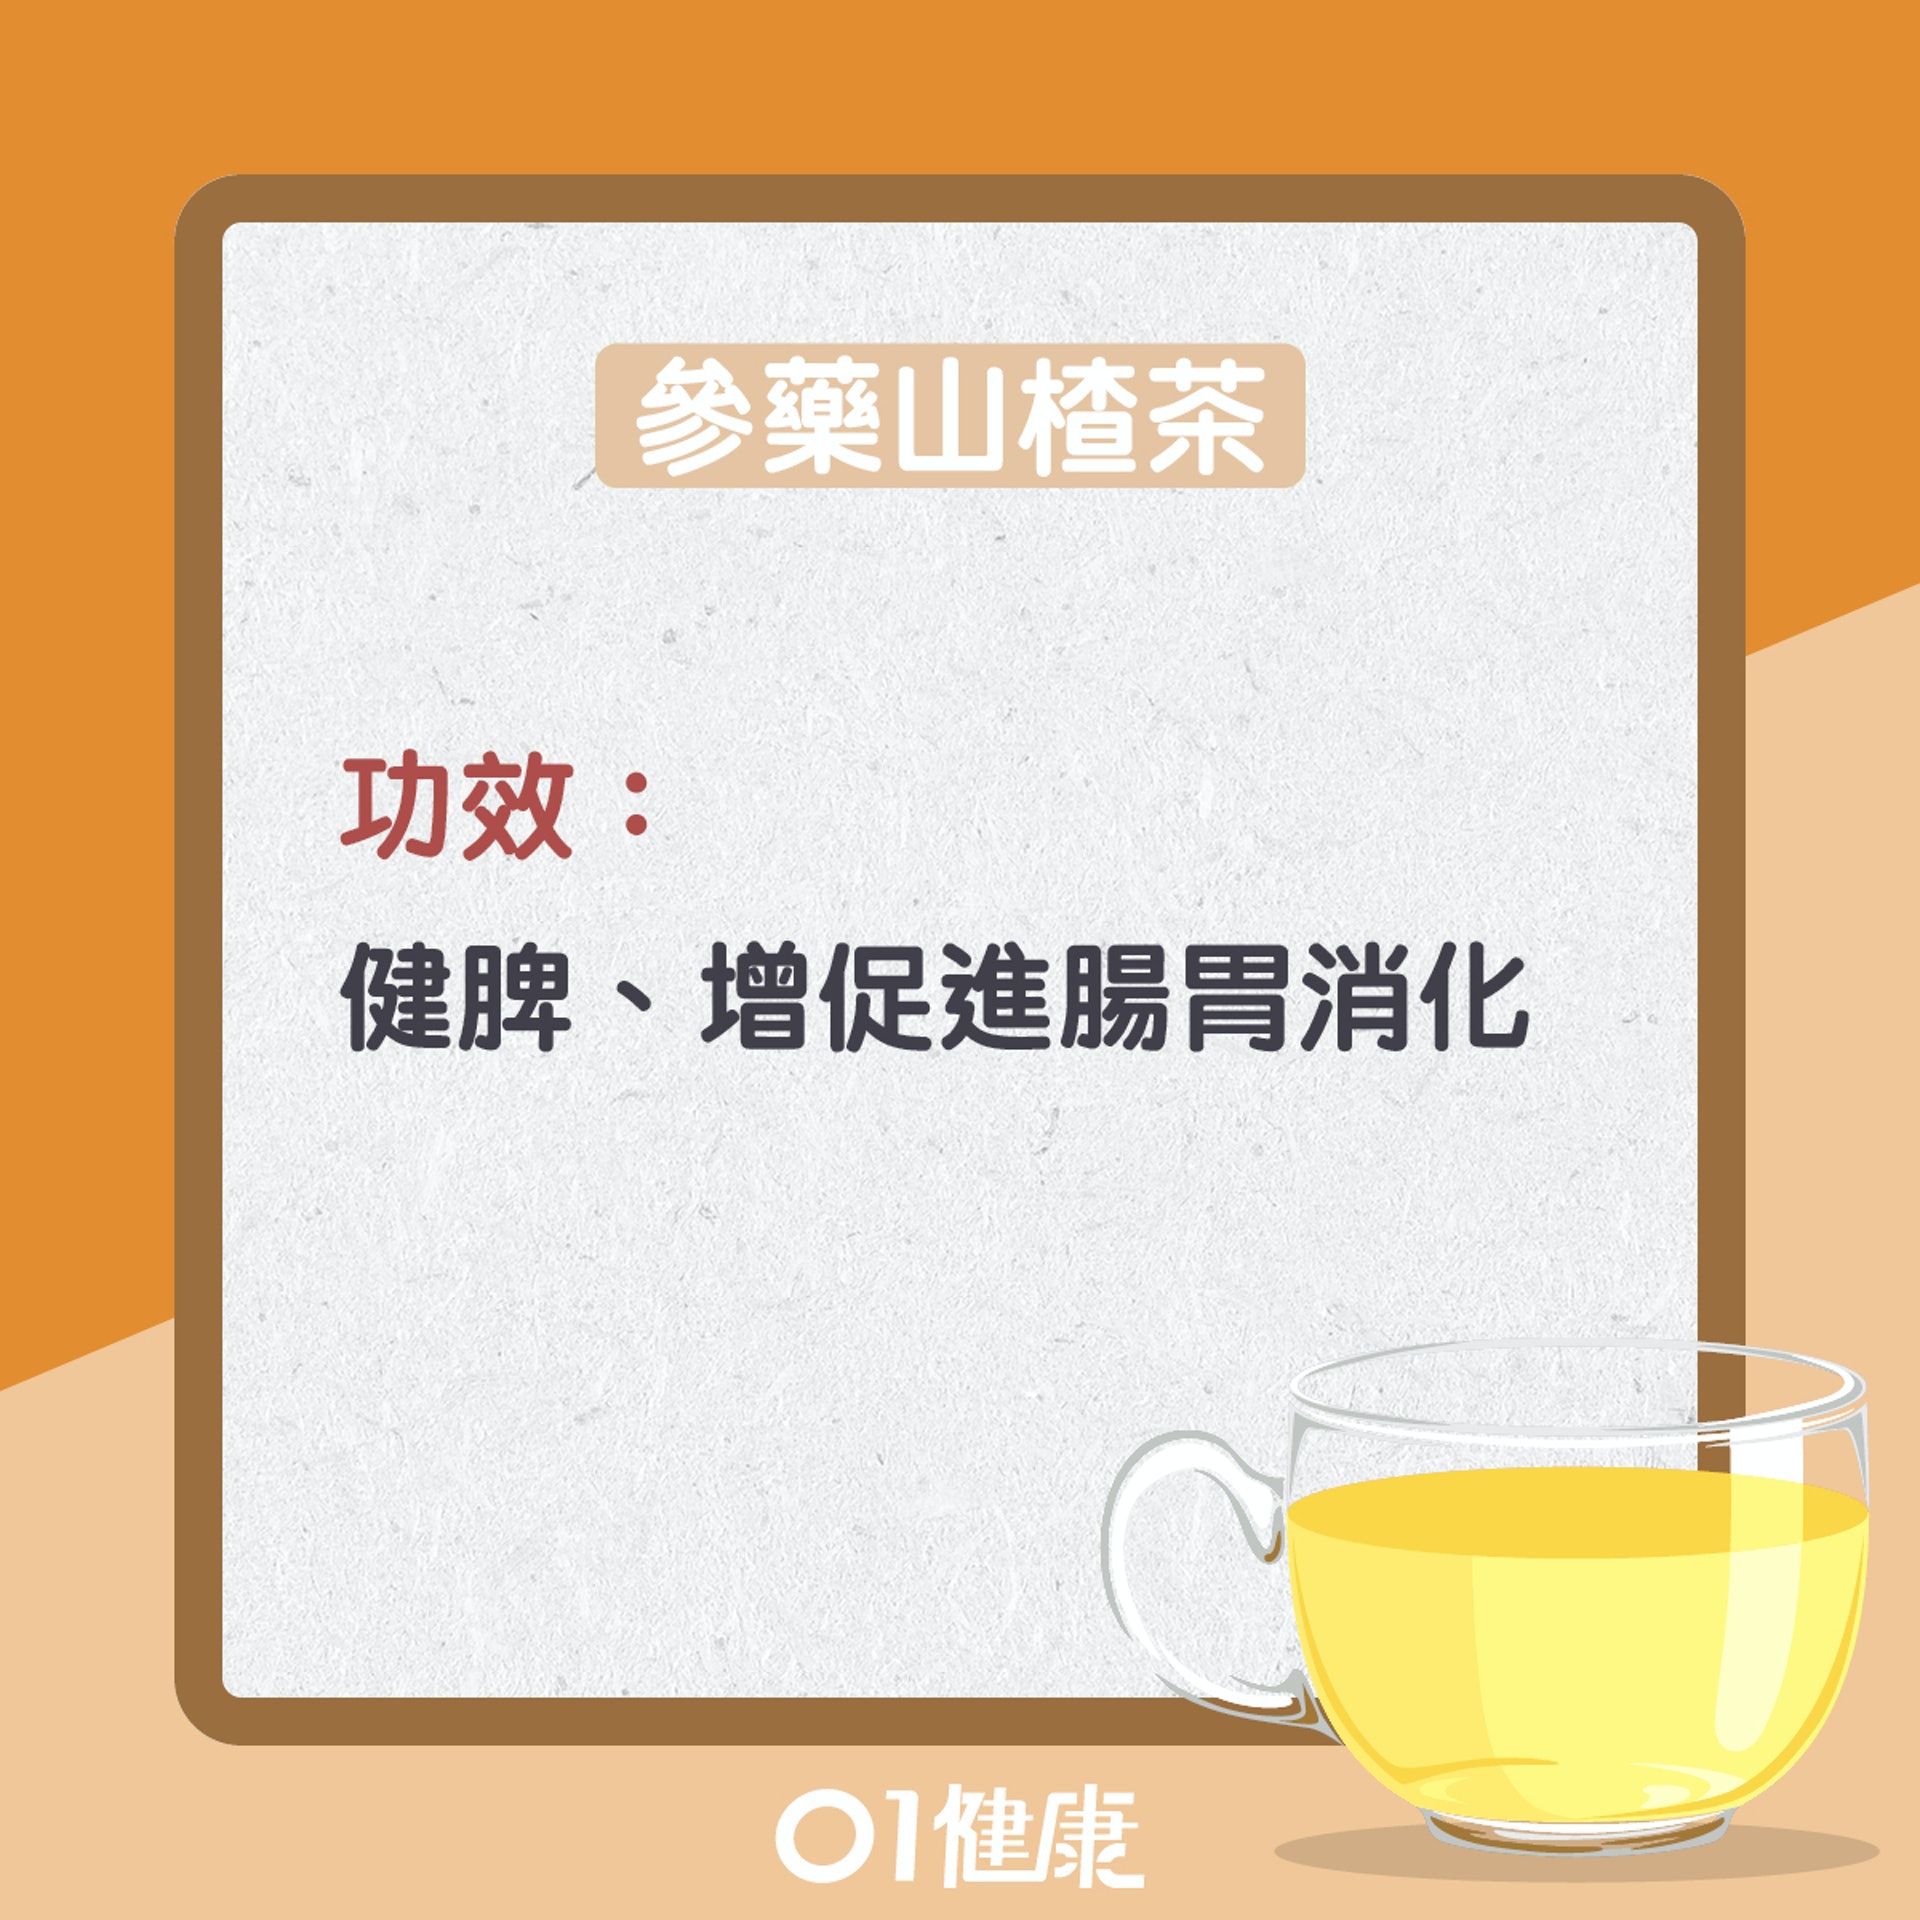 參藥山楂茶（01製圖）